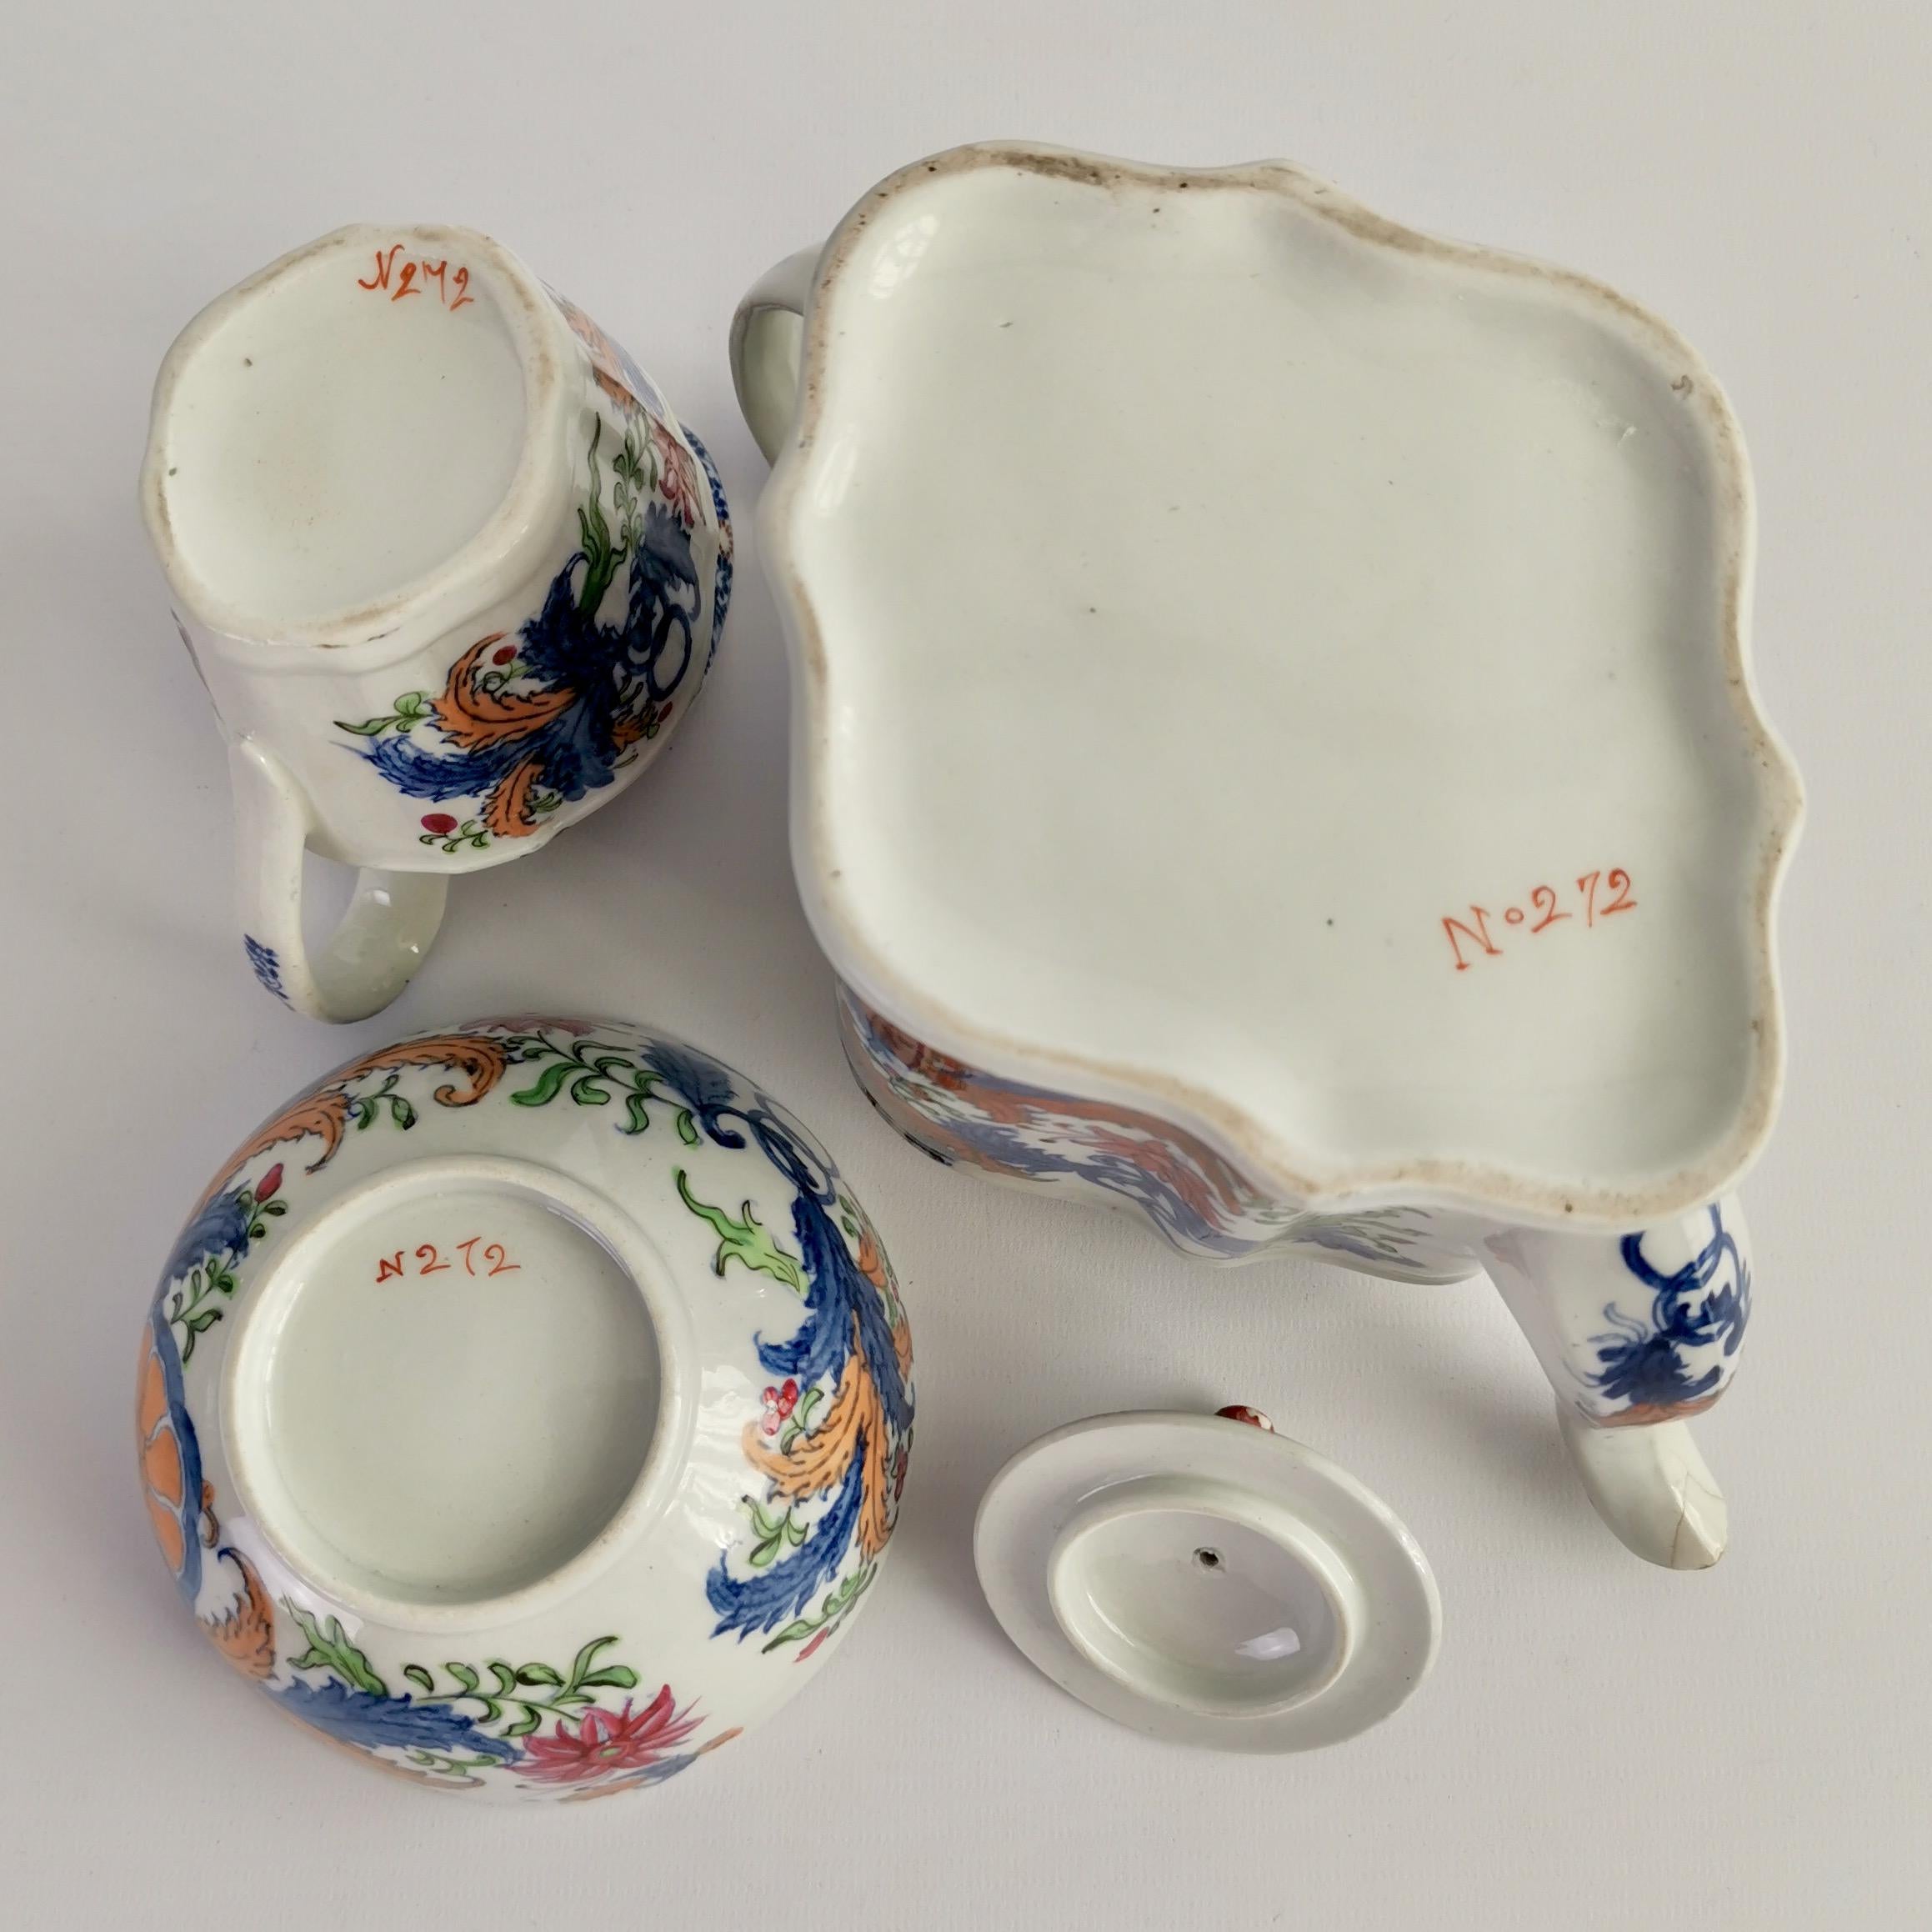 New Hall Porcelain Tea Service, Chinoiserie Flower Sprays, Georgian, circa 1795 For Sale 9